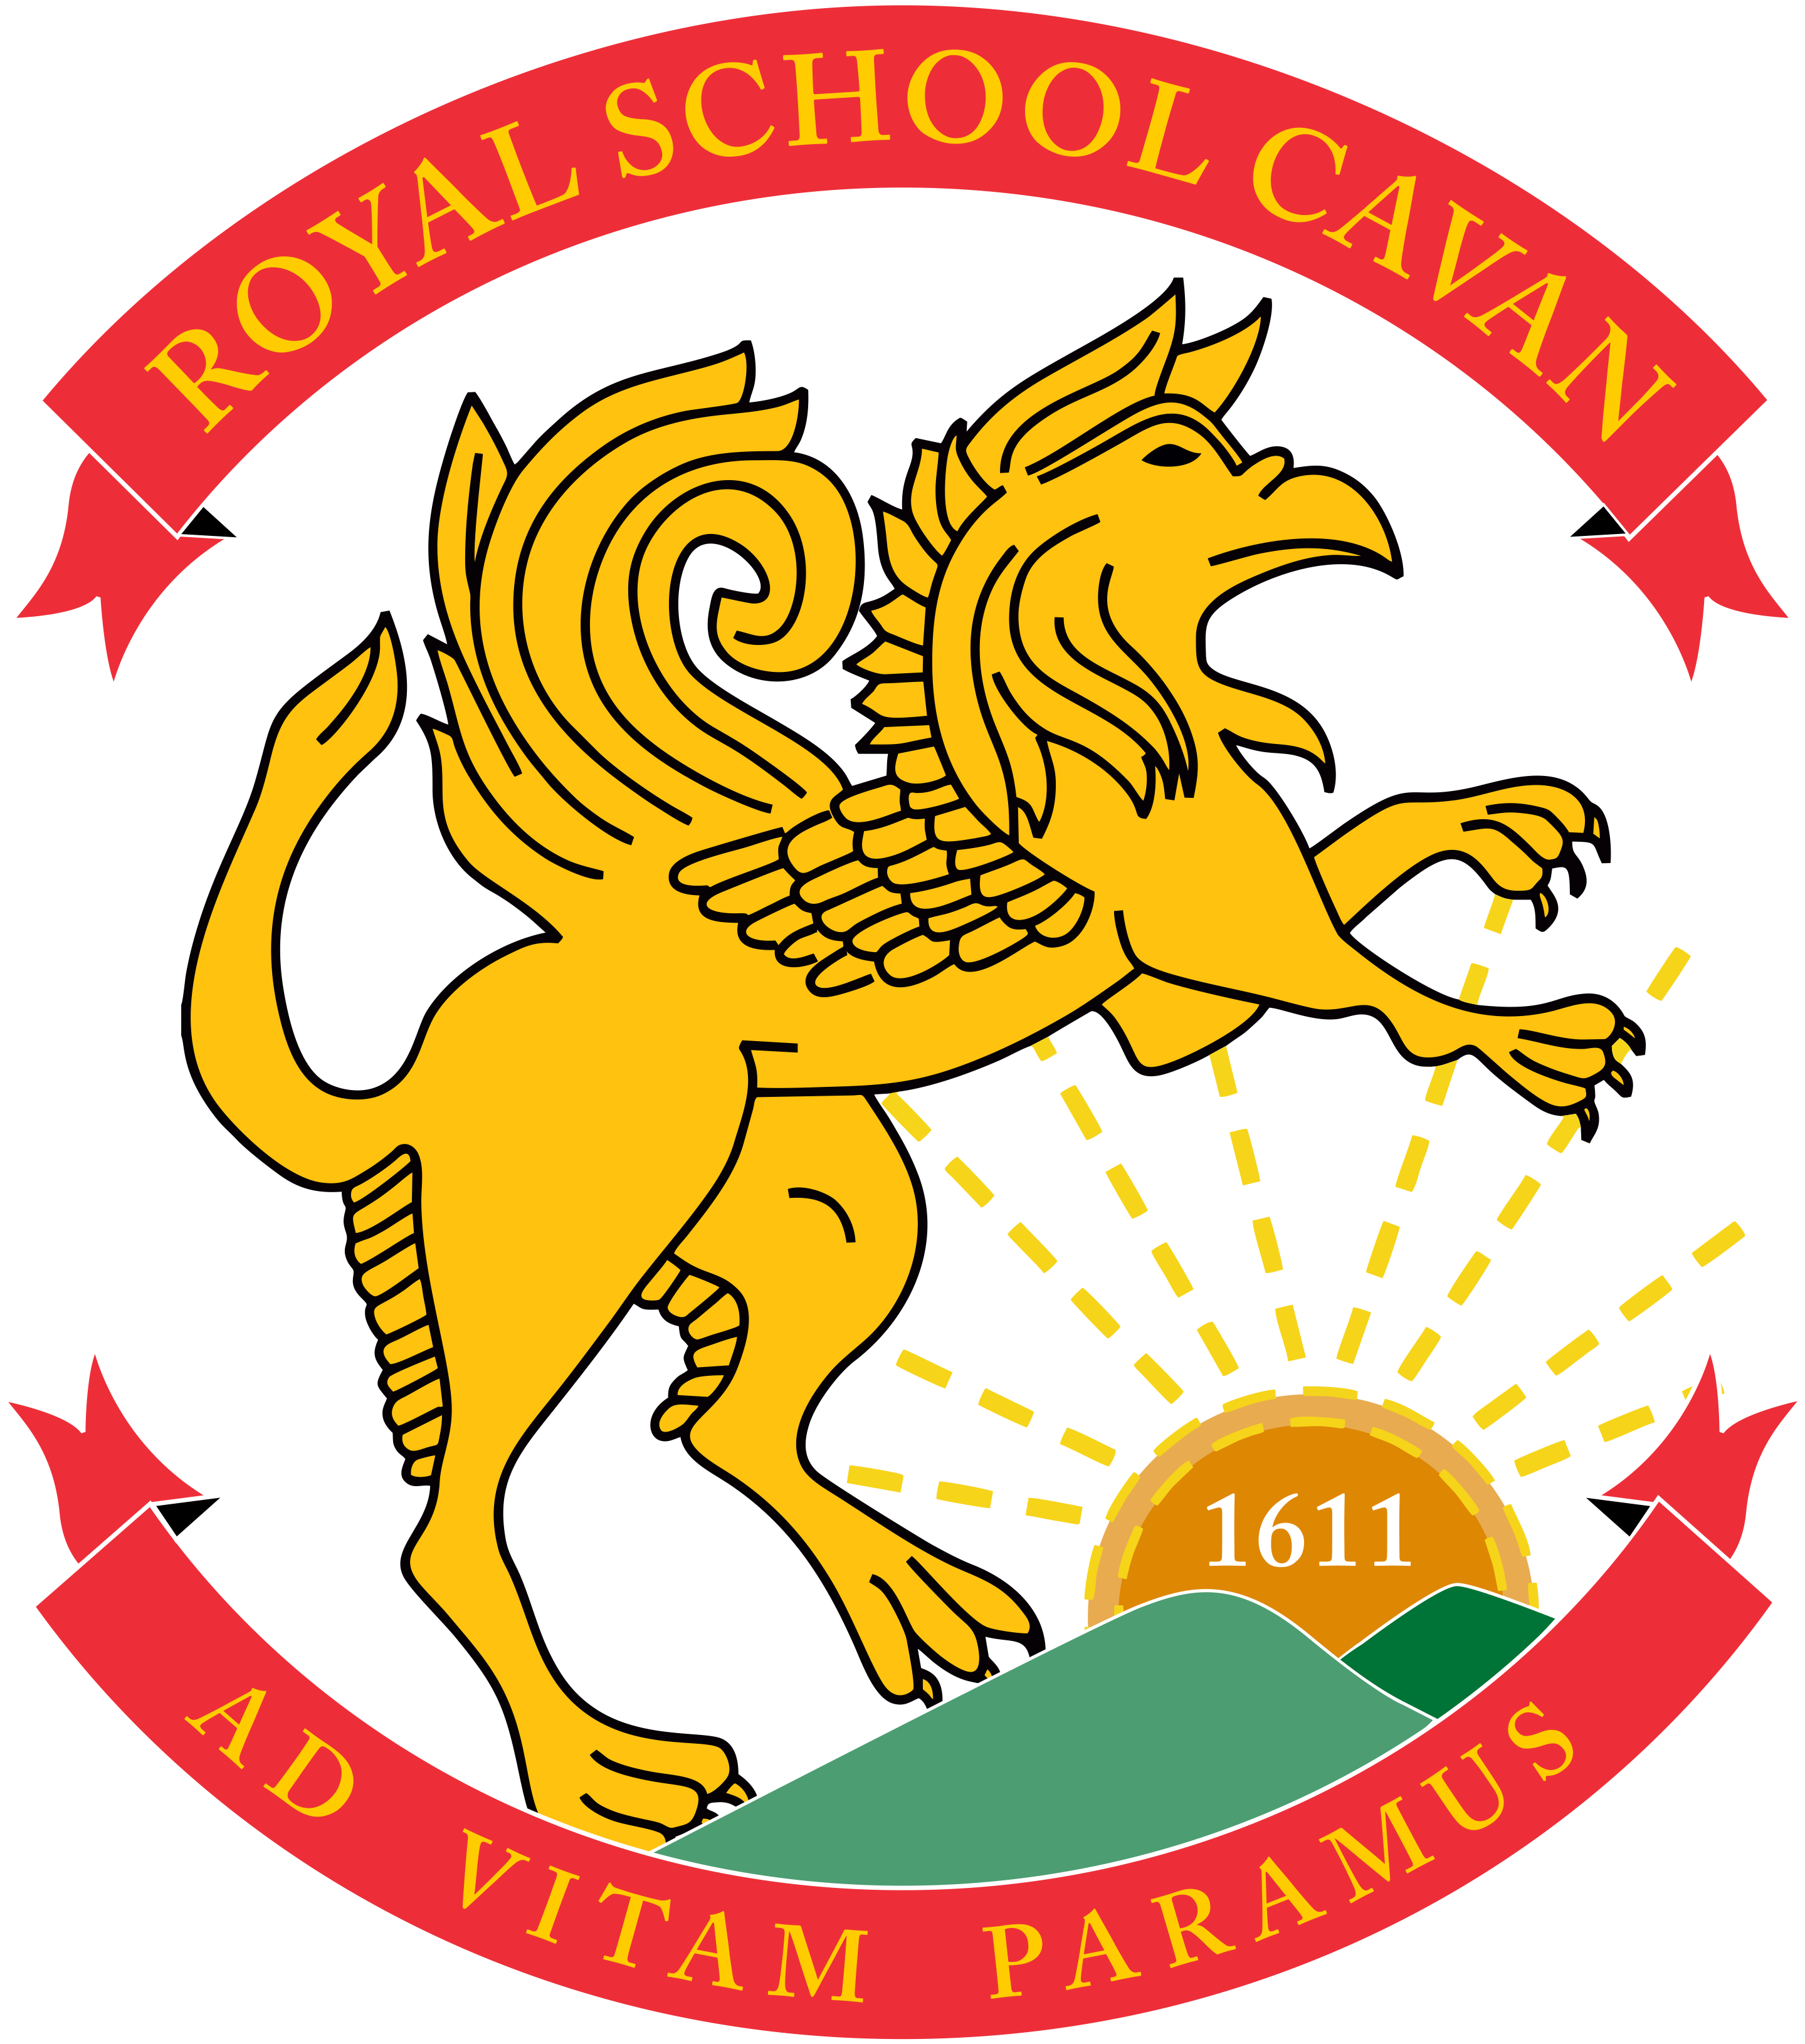 School Crest - Royal School Cavan (3414x3576)